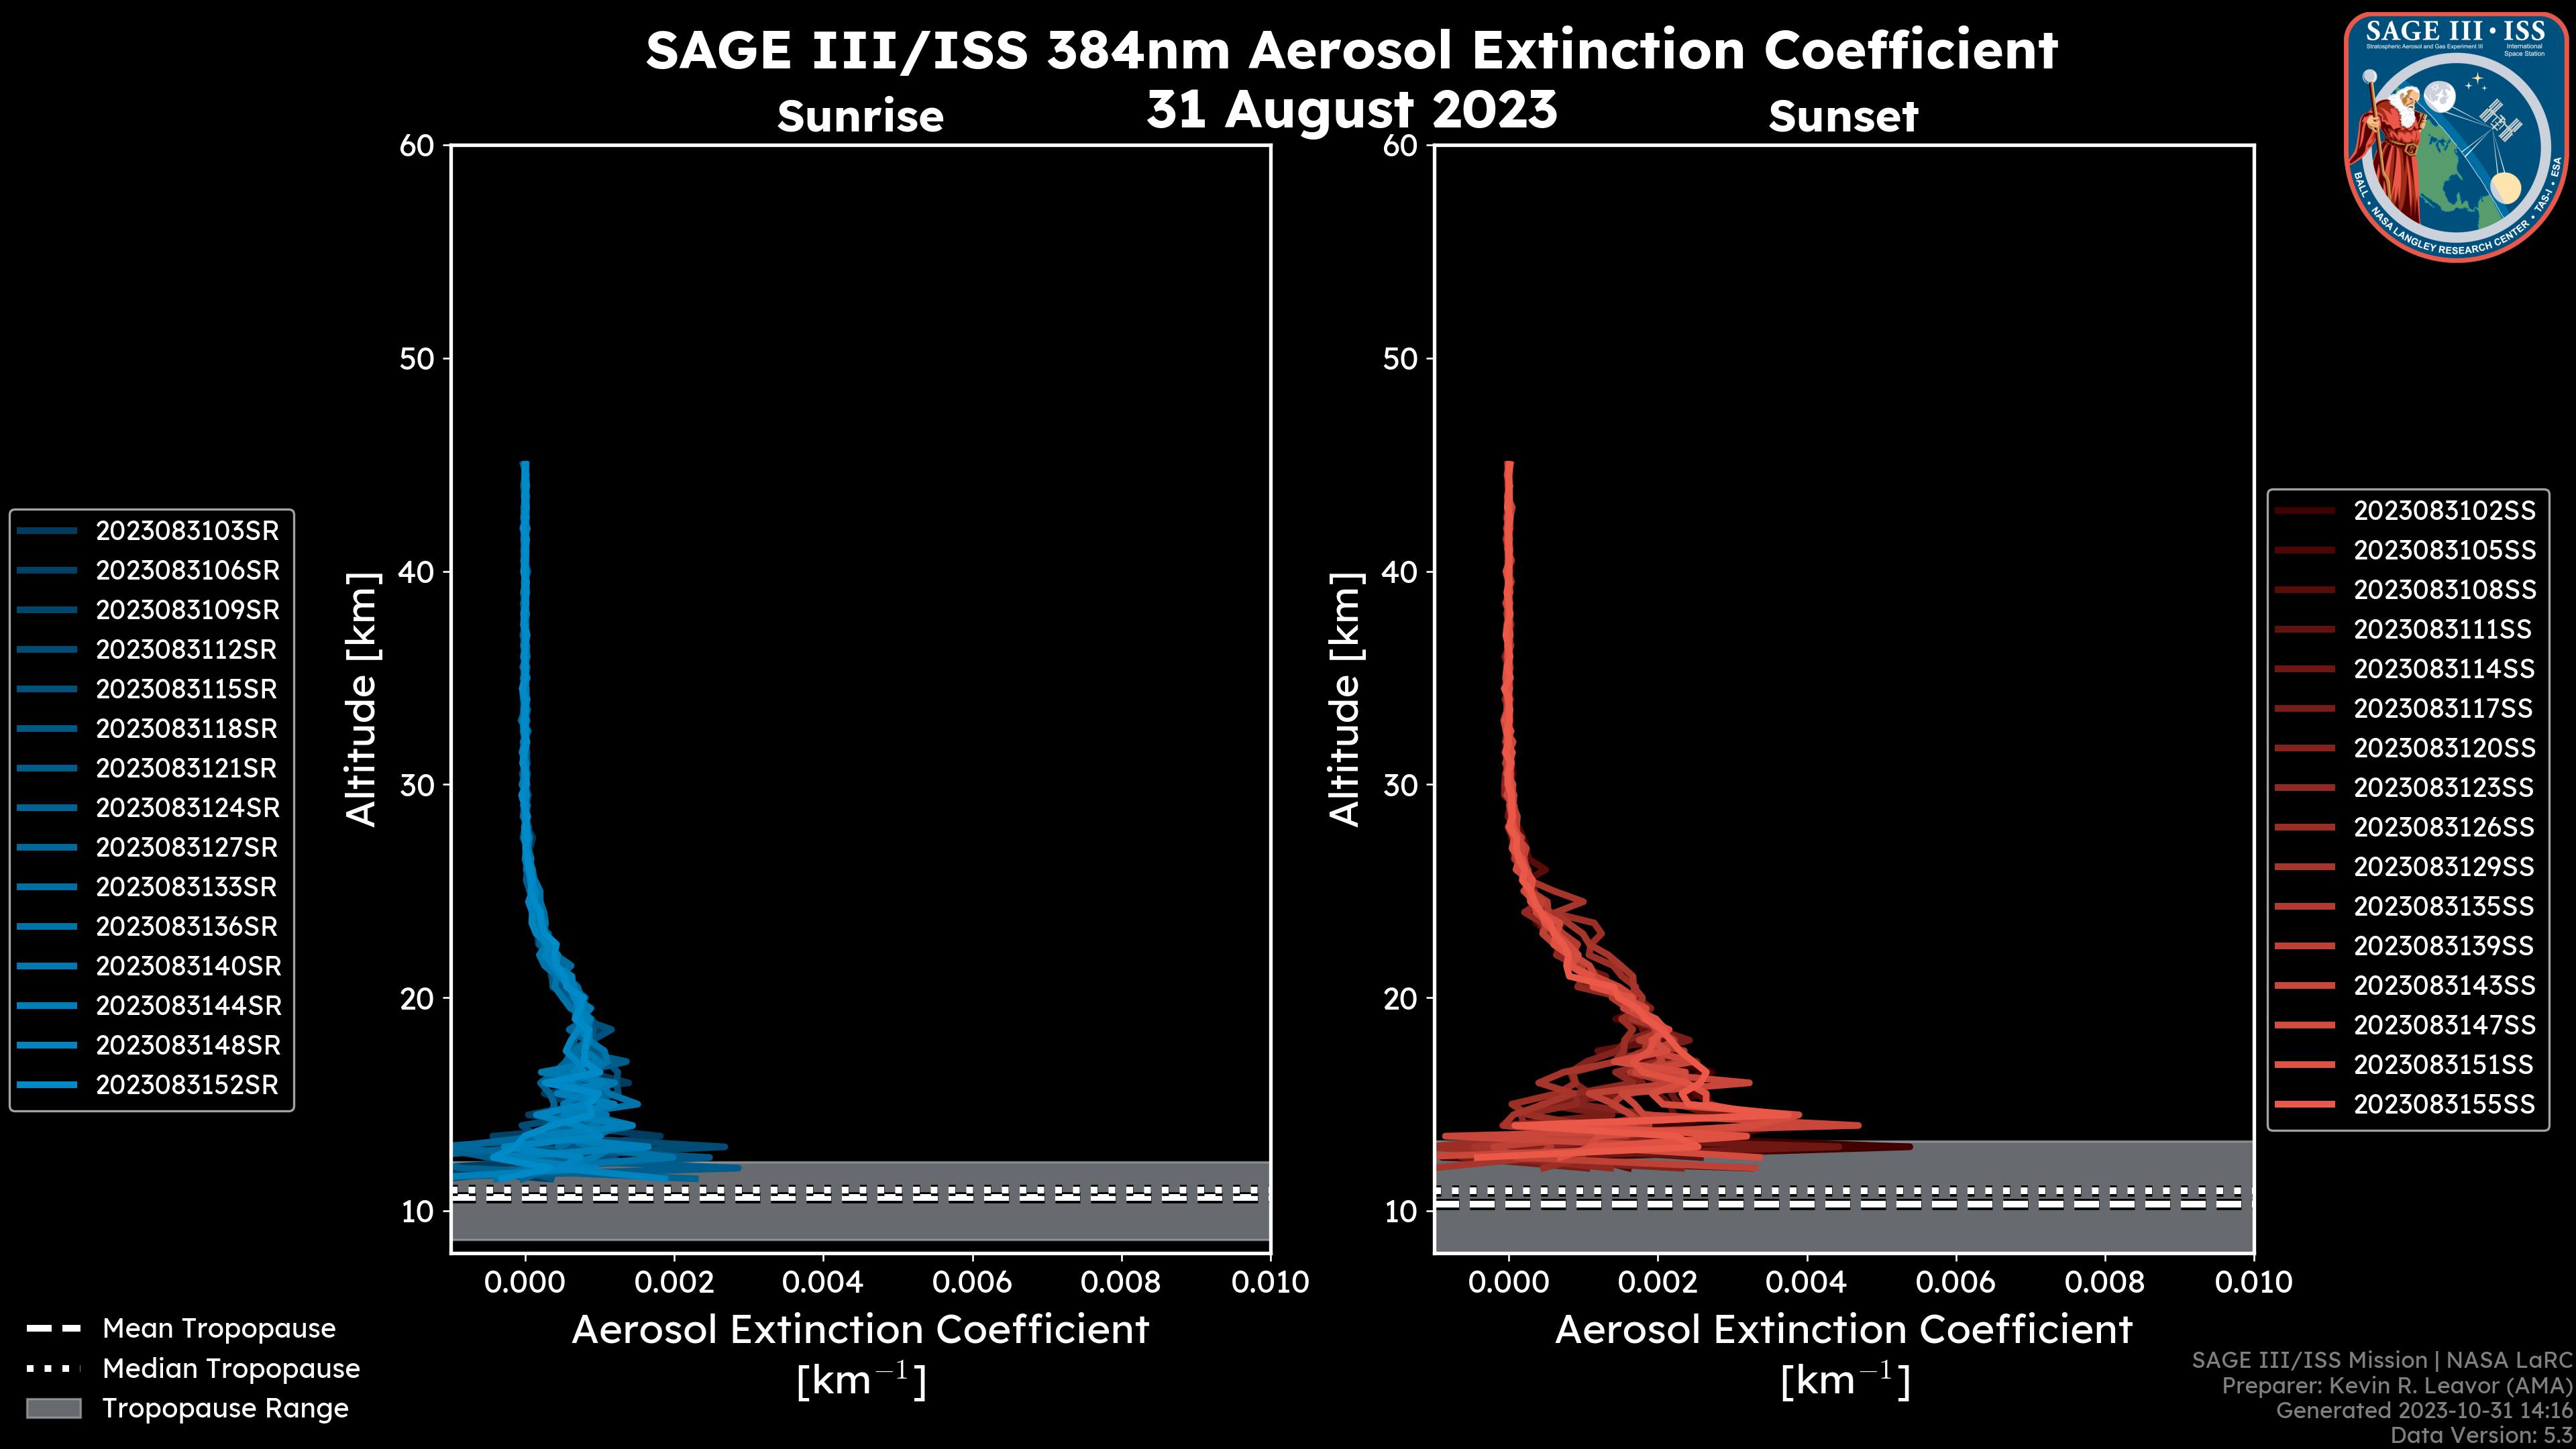 384nm Aerosol Extinction Coefficient